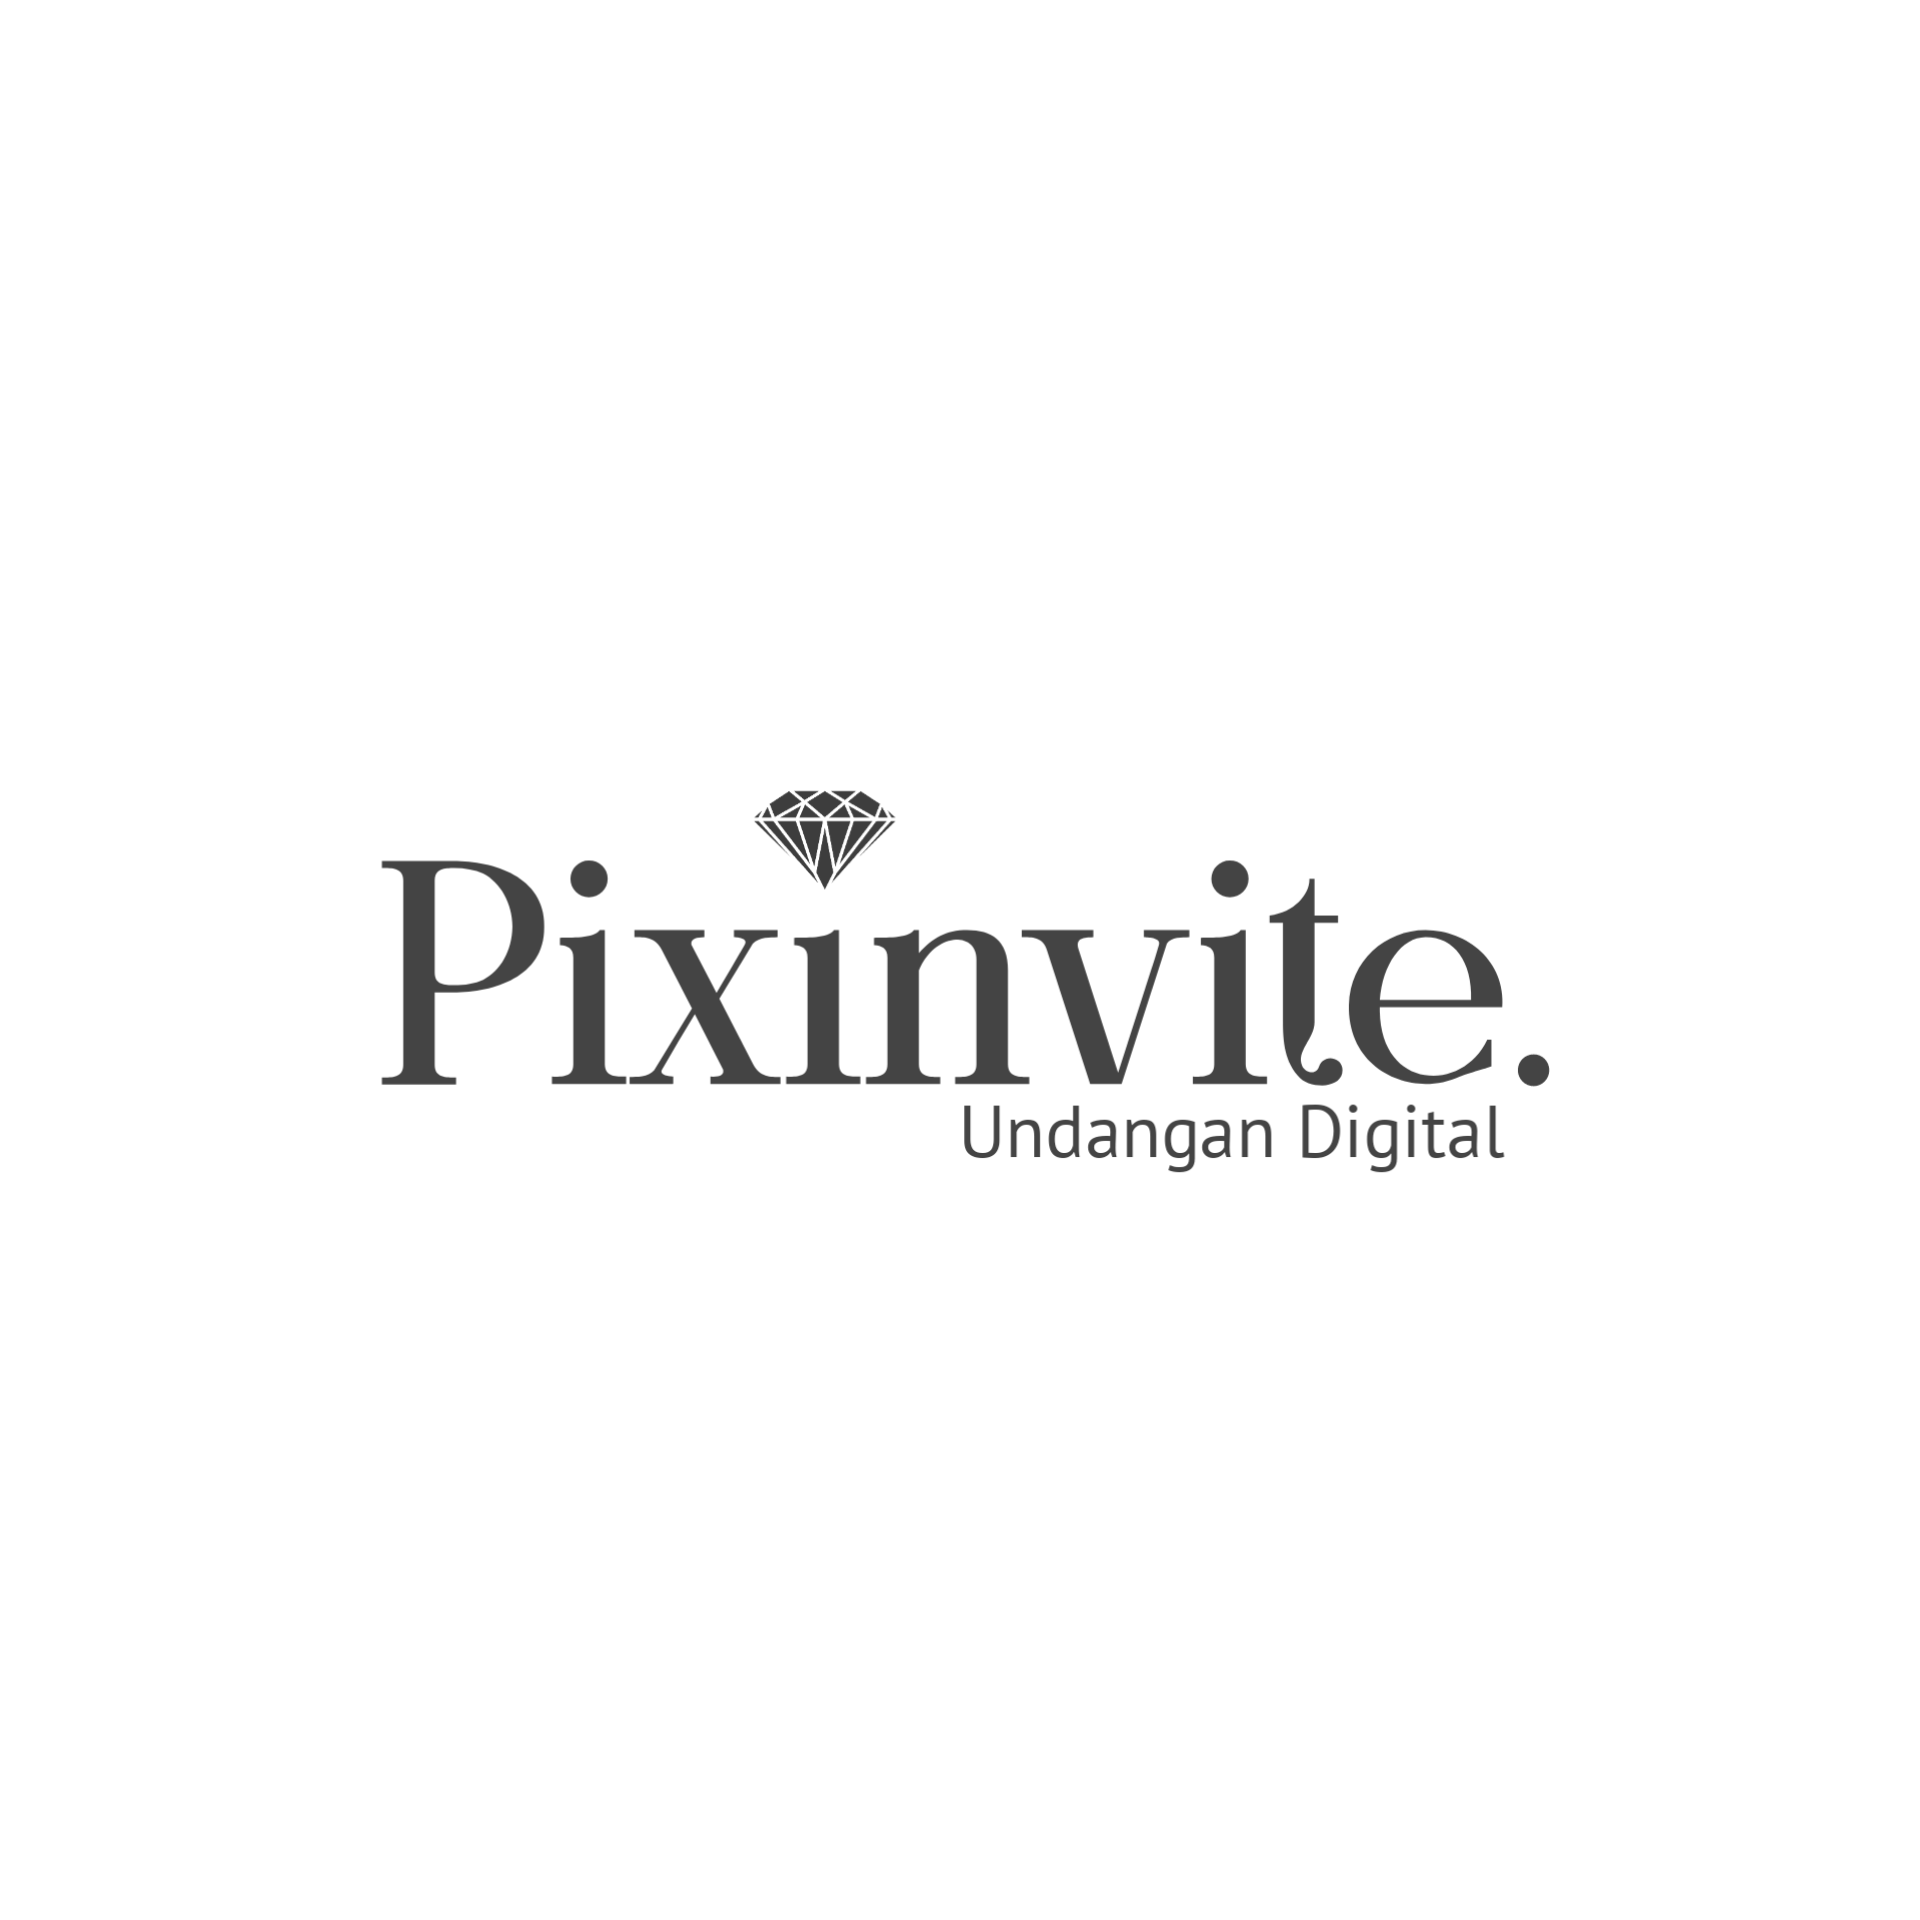 Pixinvite Logo